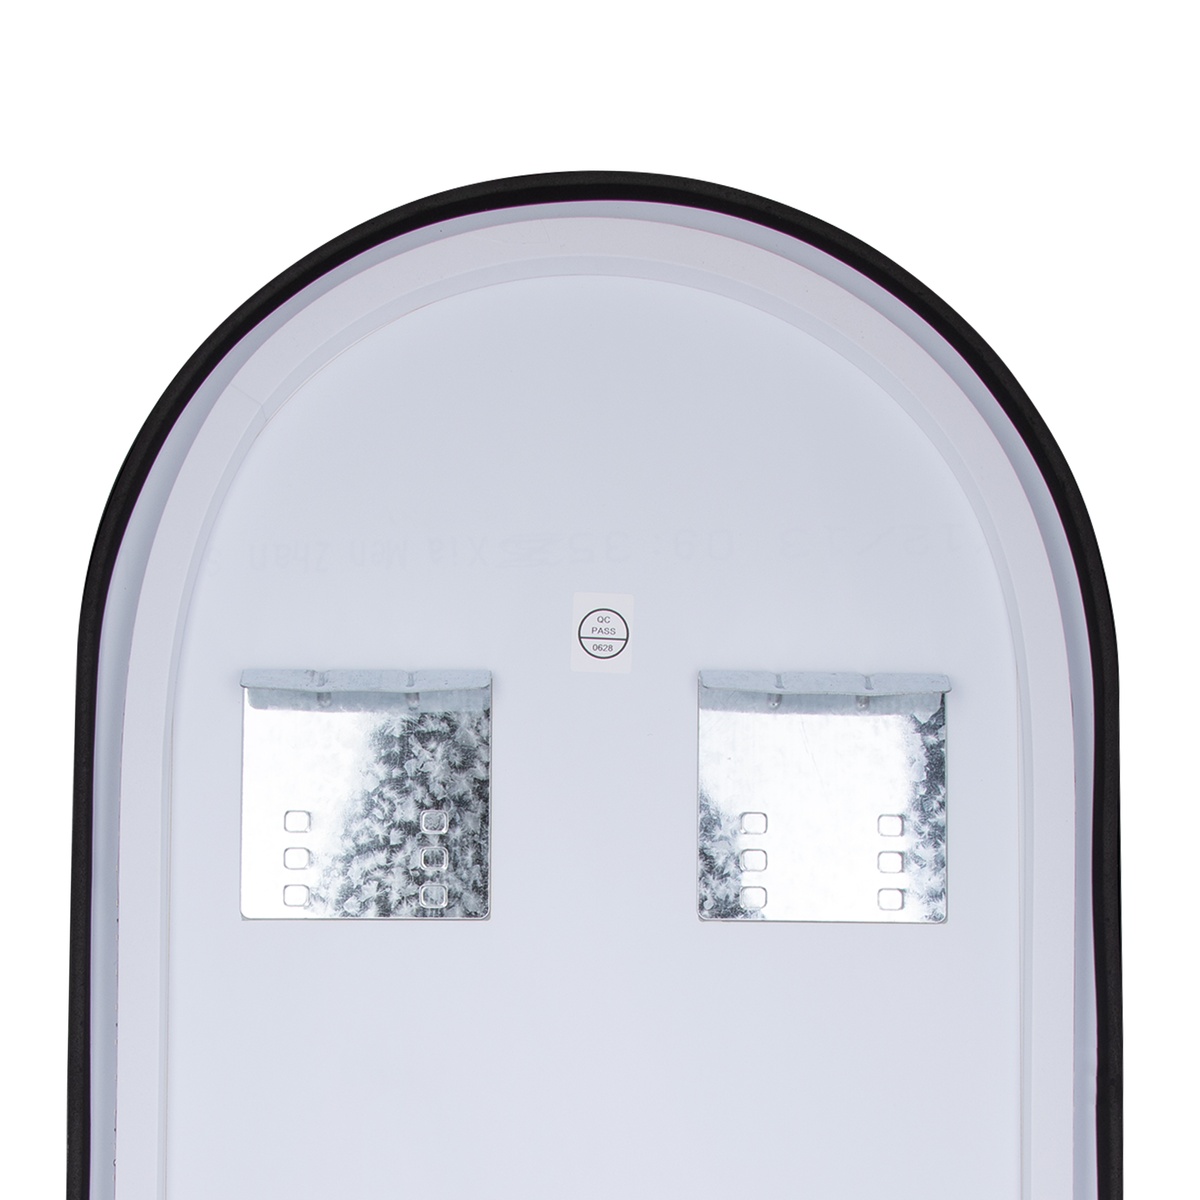 Зеркало в ванную Q-TAP Scorpio 90x50см c подсветкой овальное QT14787001B